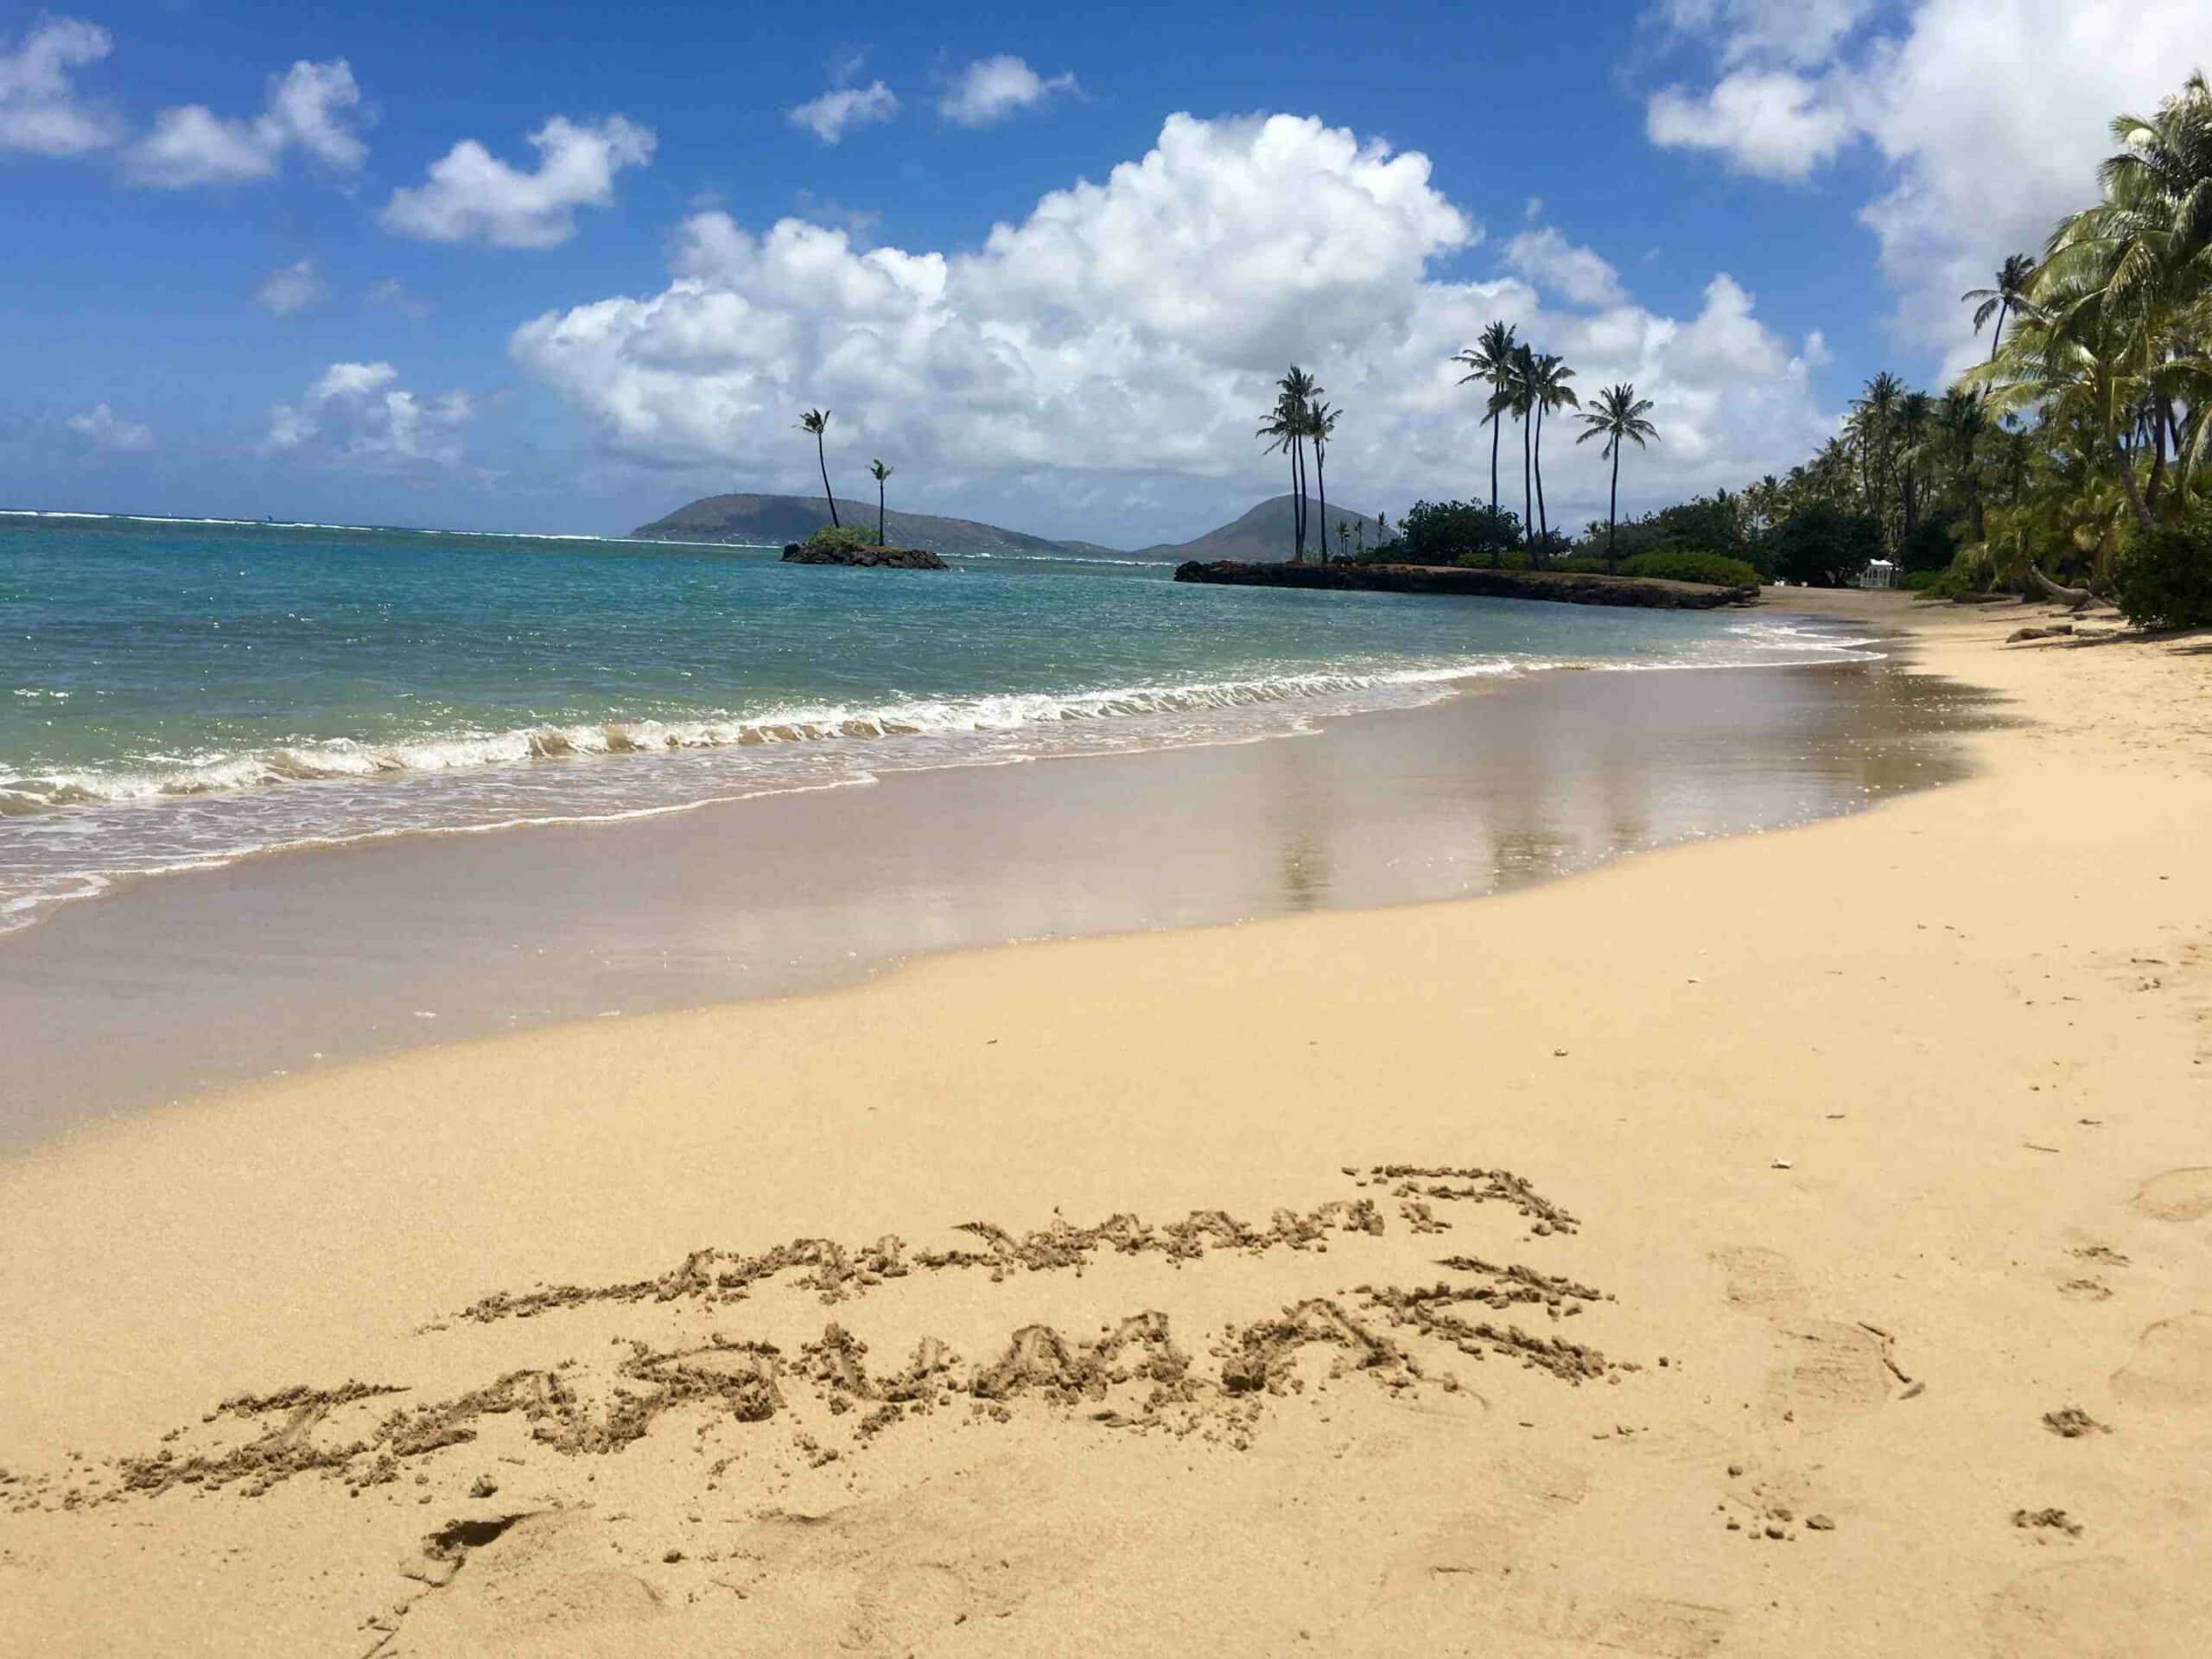 Aloha了夏威夷群岛的法律。 “Aloha”在夏威夷语中不只是你好的意思，更是一种心情。